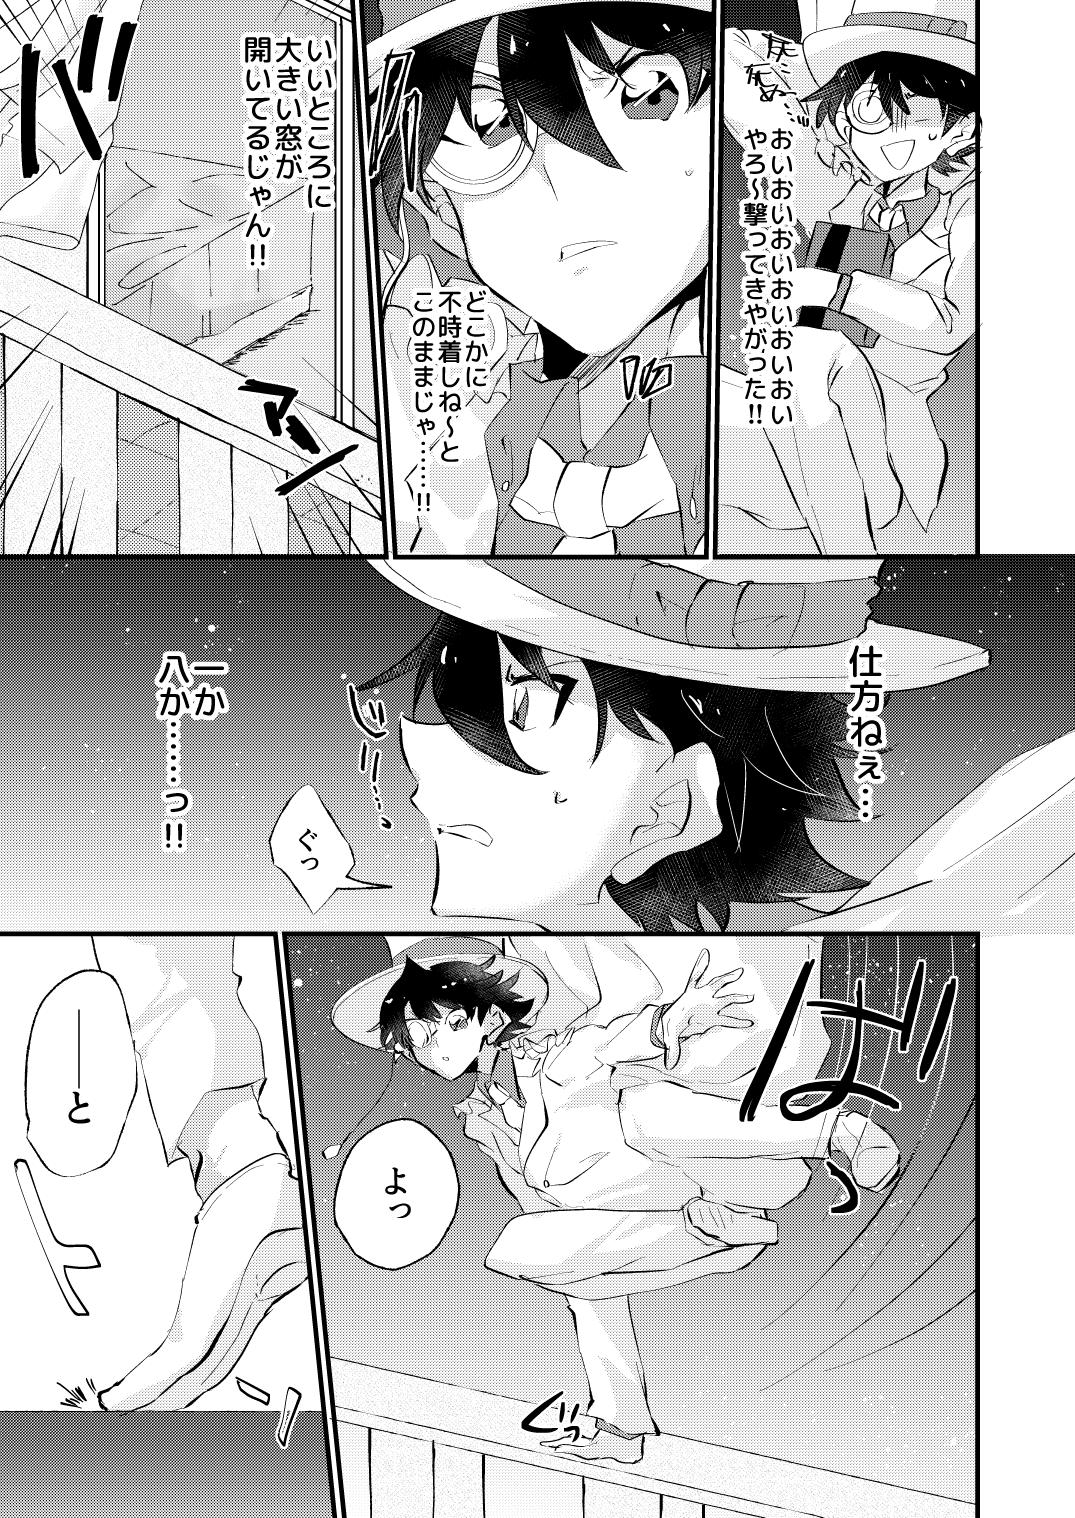 T Girl [404] (Detective Conan) [Digital] - Detective conan | meitantei conan Asstomouth - Page 5